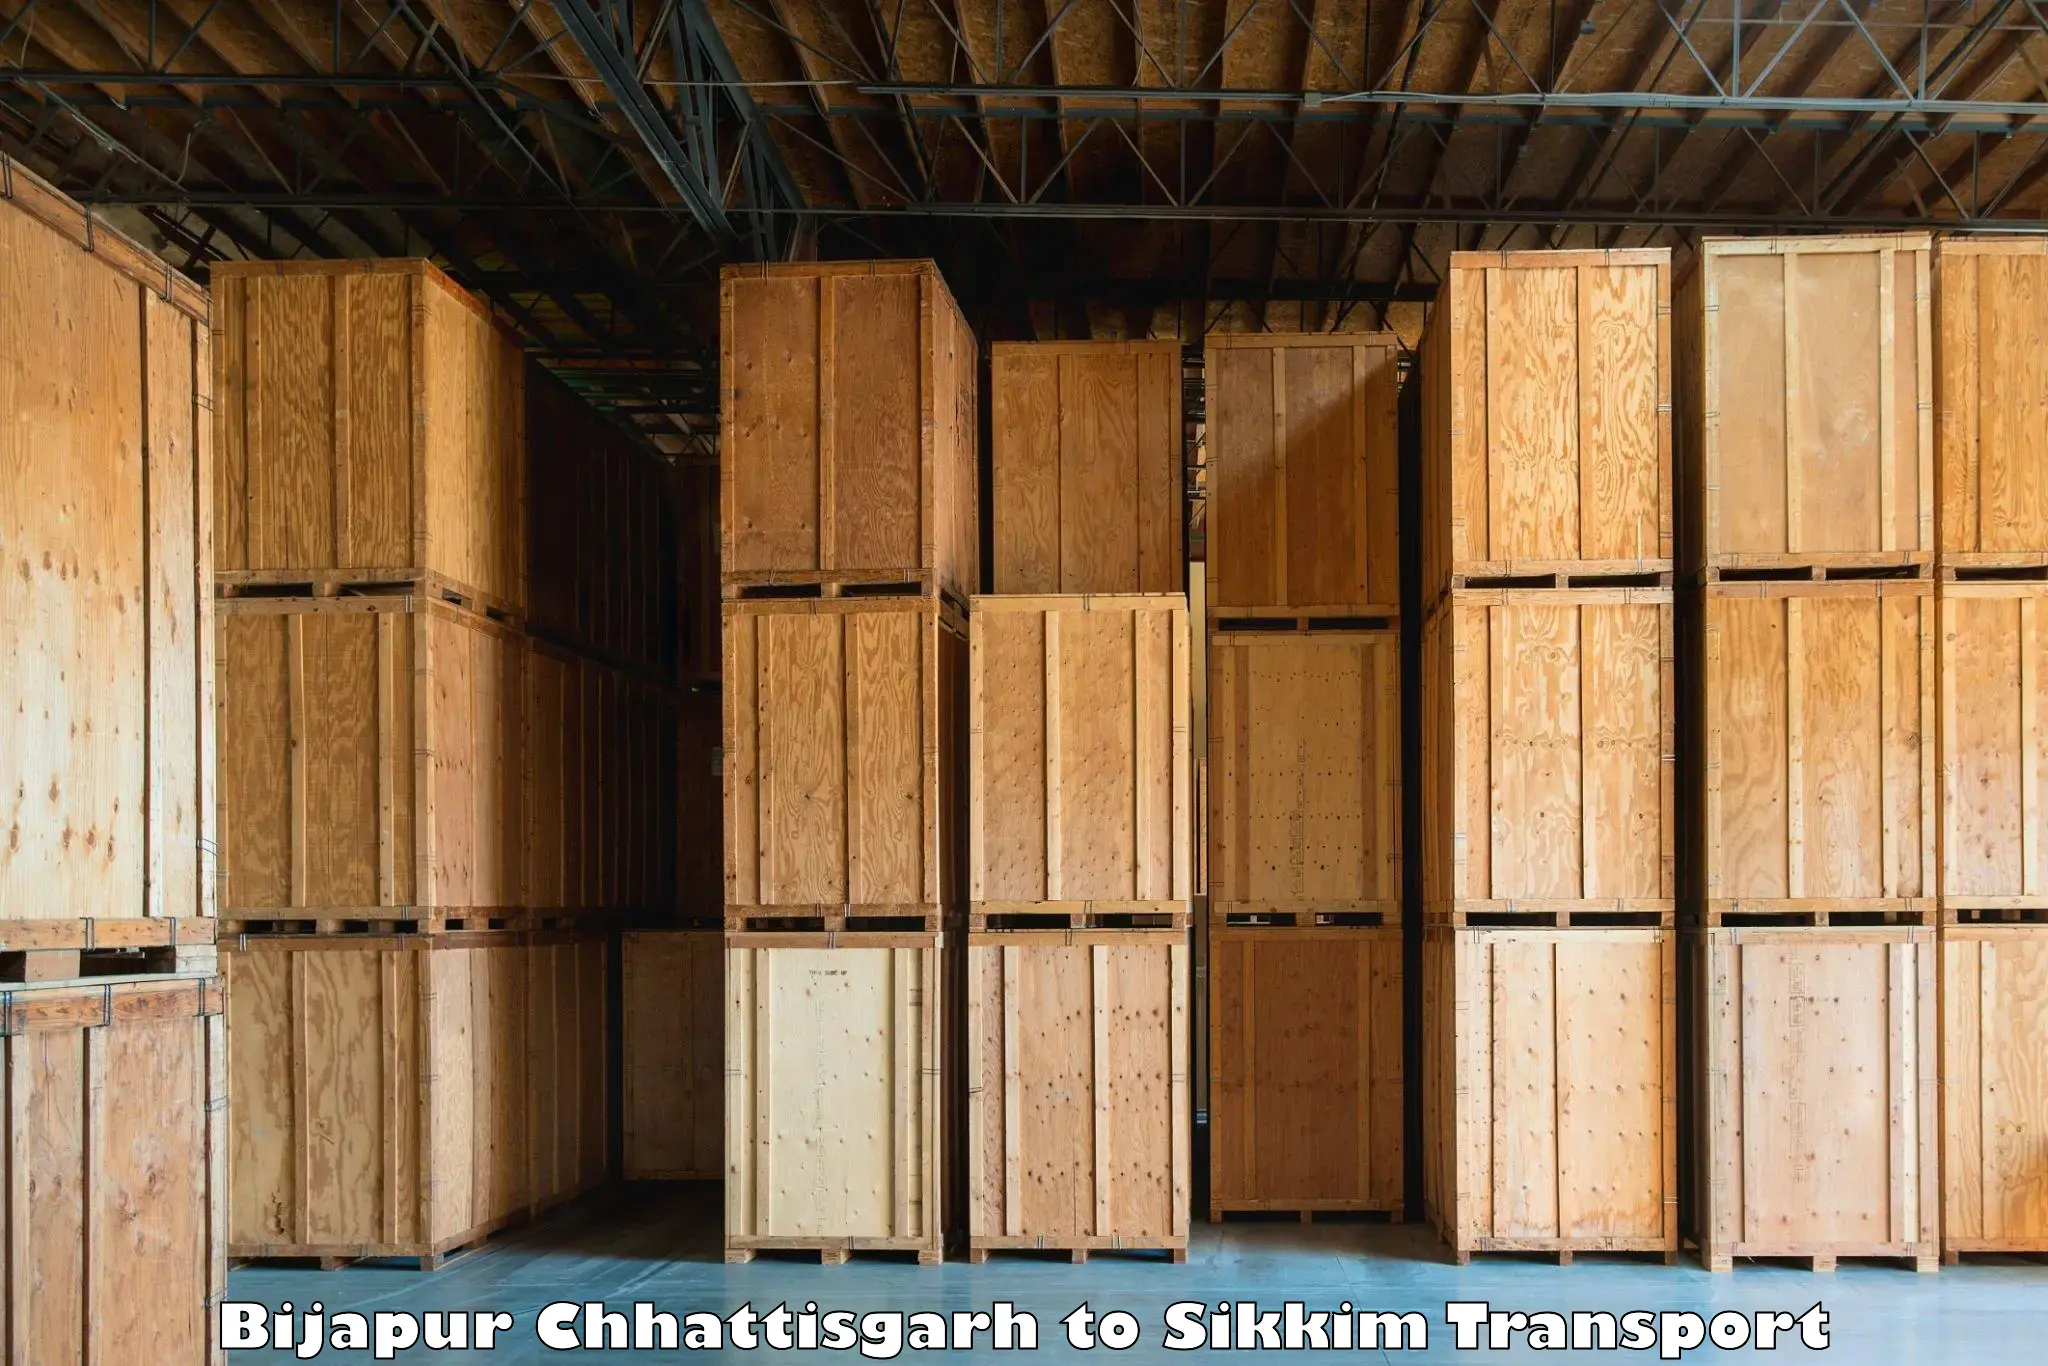 Air cargo transport services Bijapur Chhattisgarh to Sikkim